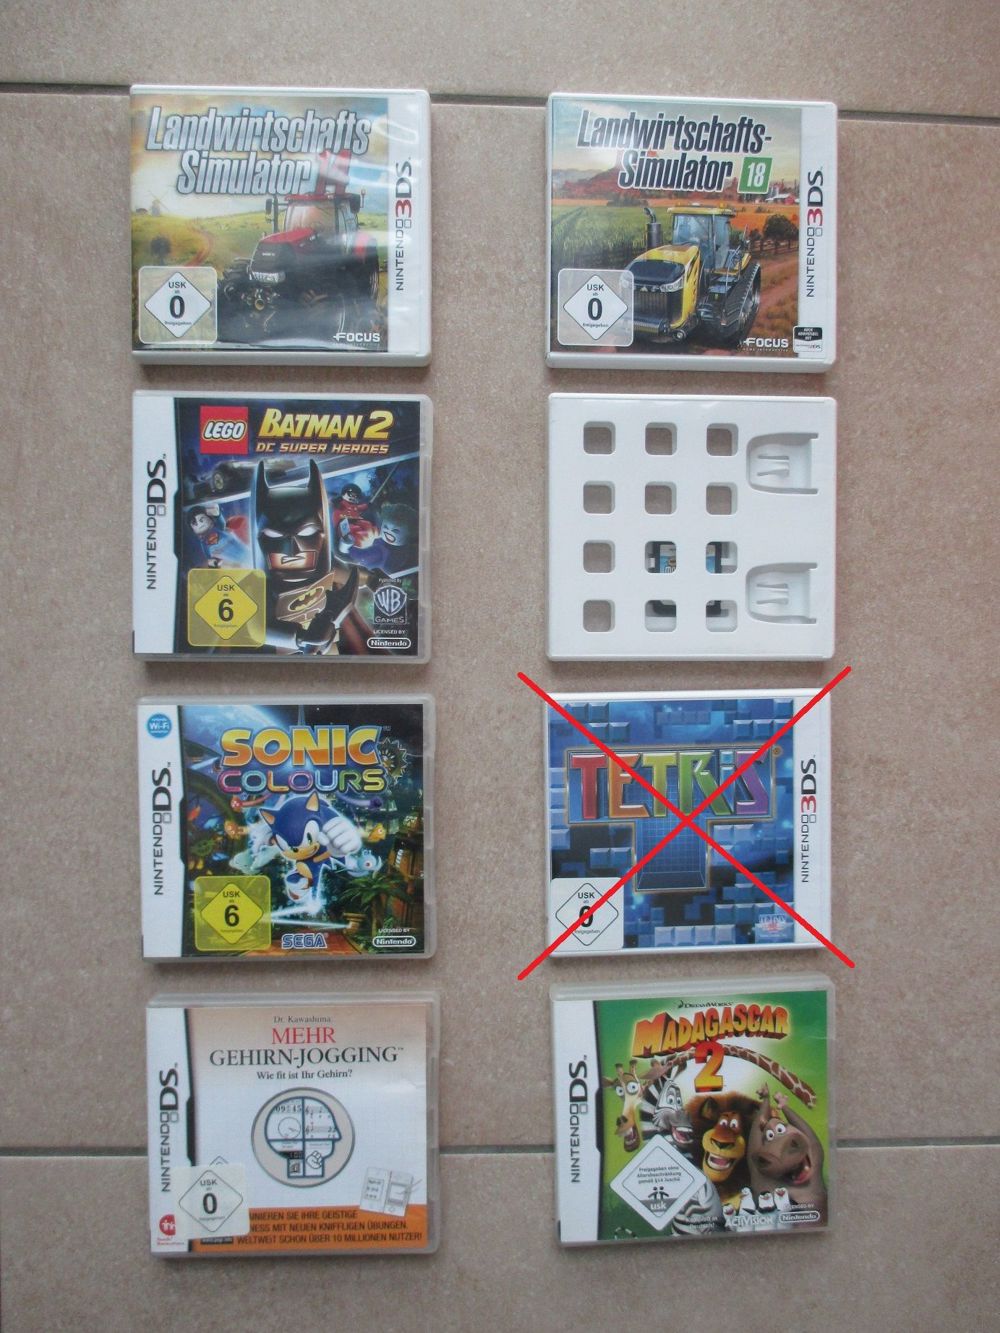 Spiele für NINTENDO 3DS XL Konsole - Top!